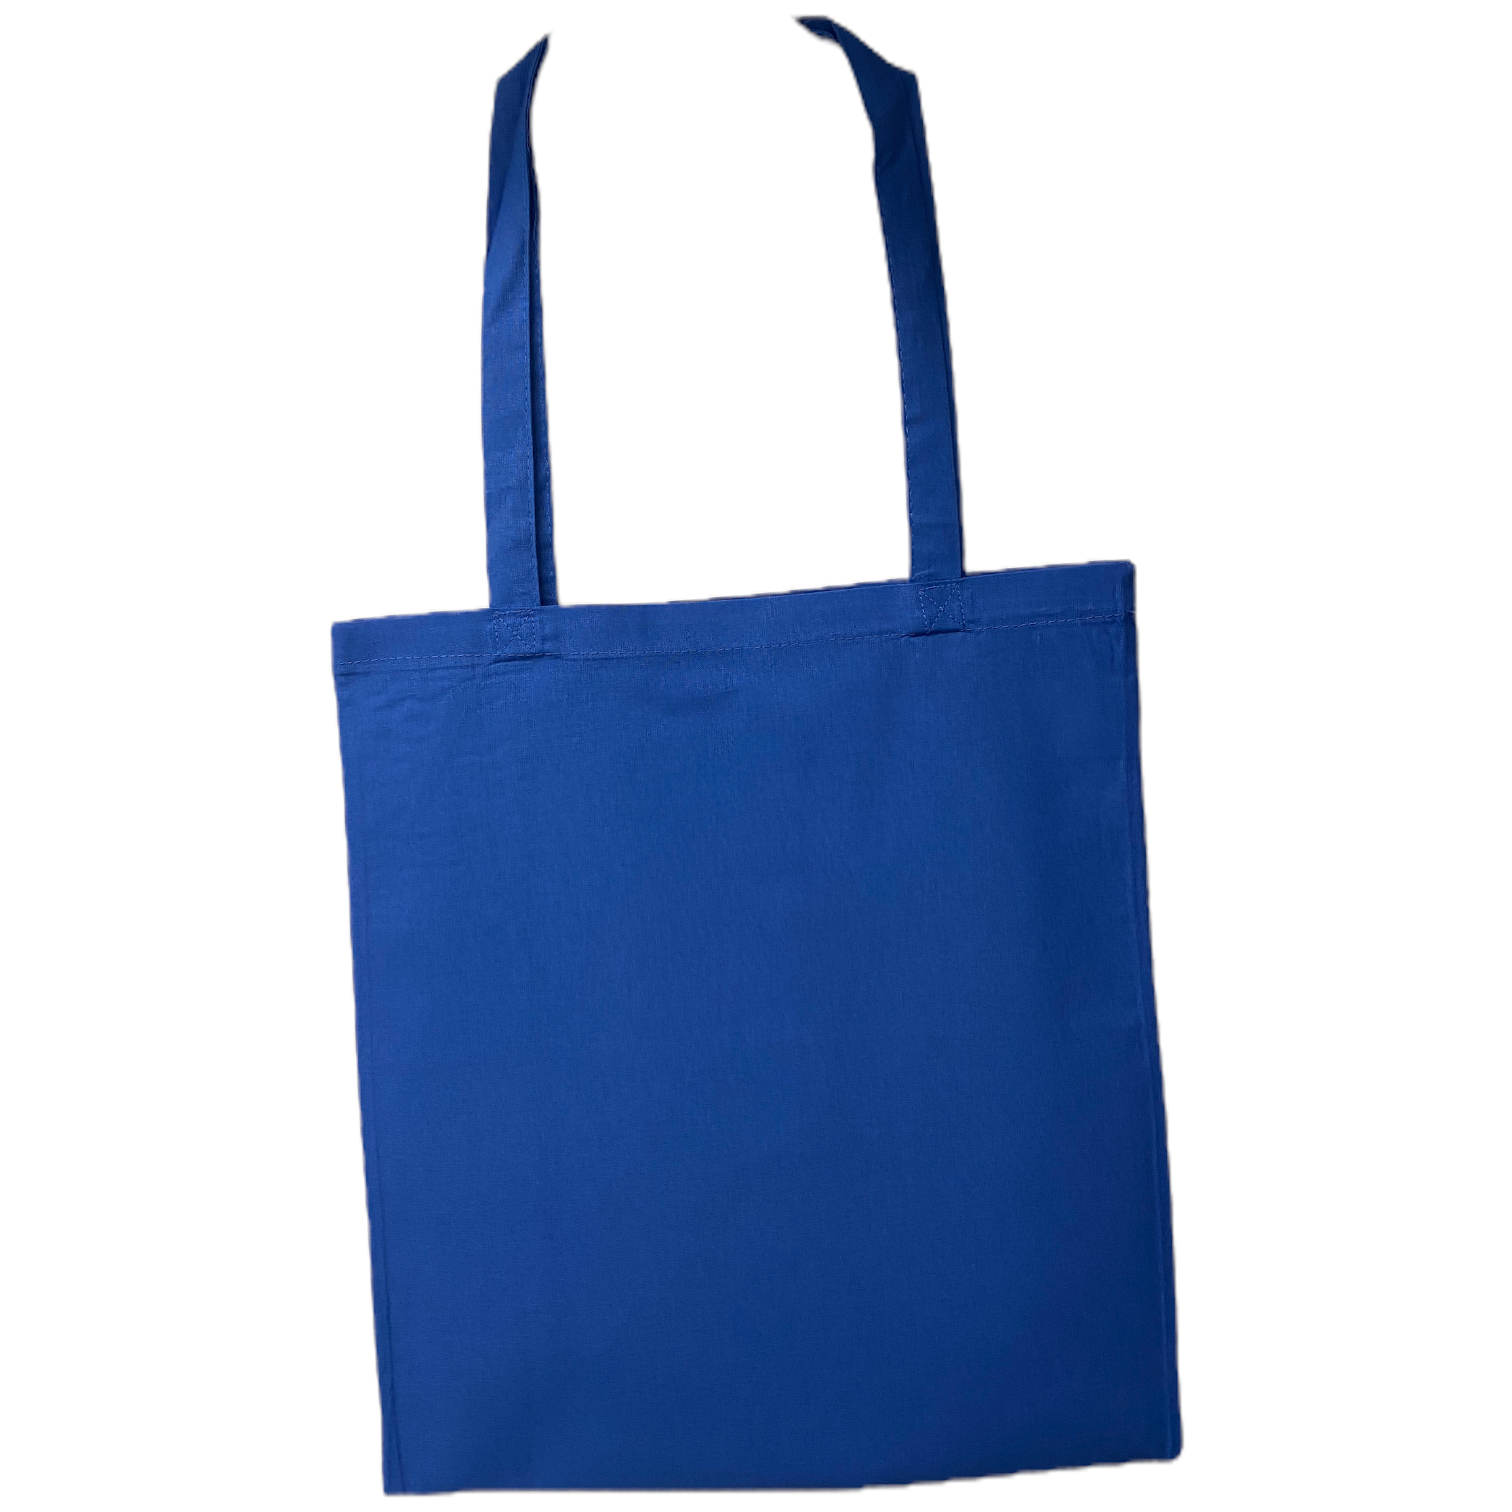  Baumwolltragetasche Royalblau "Mir reichts wir gehen spazieren"